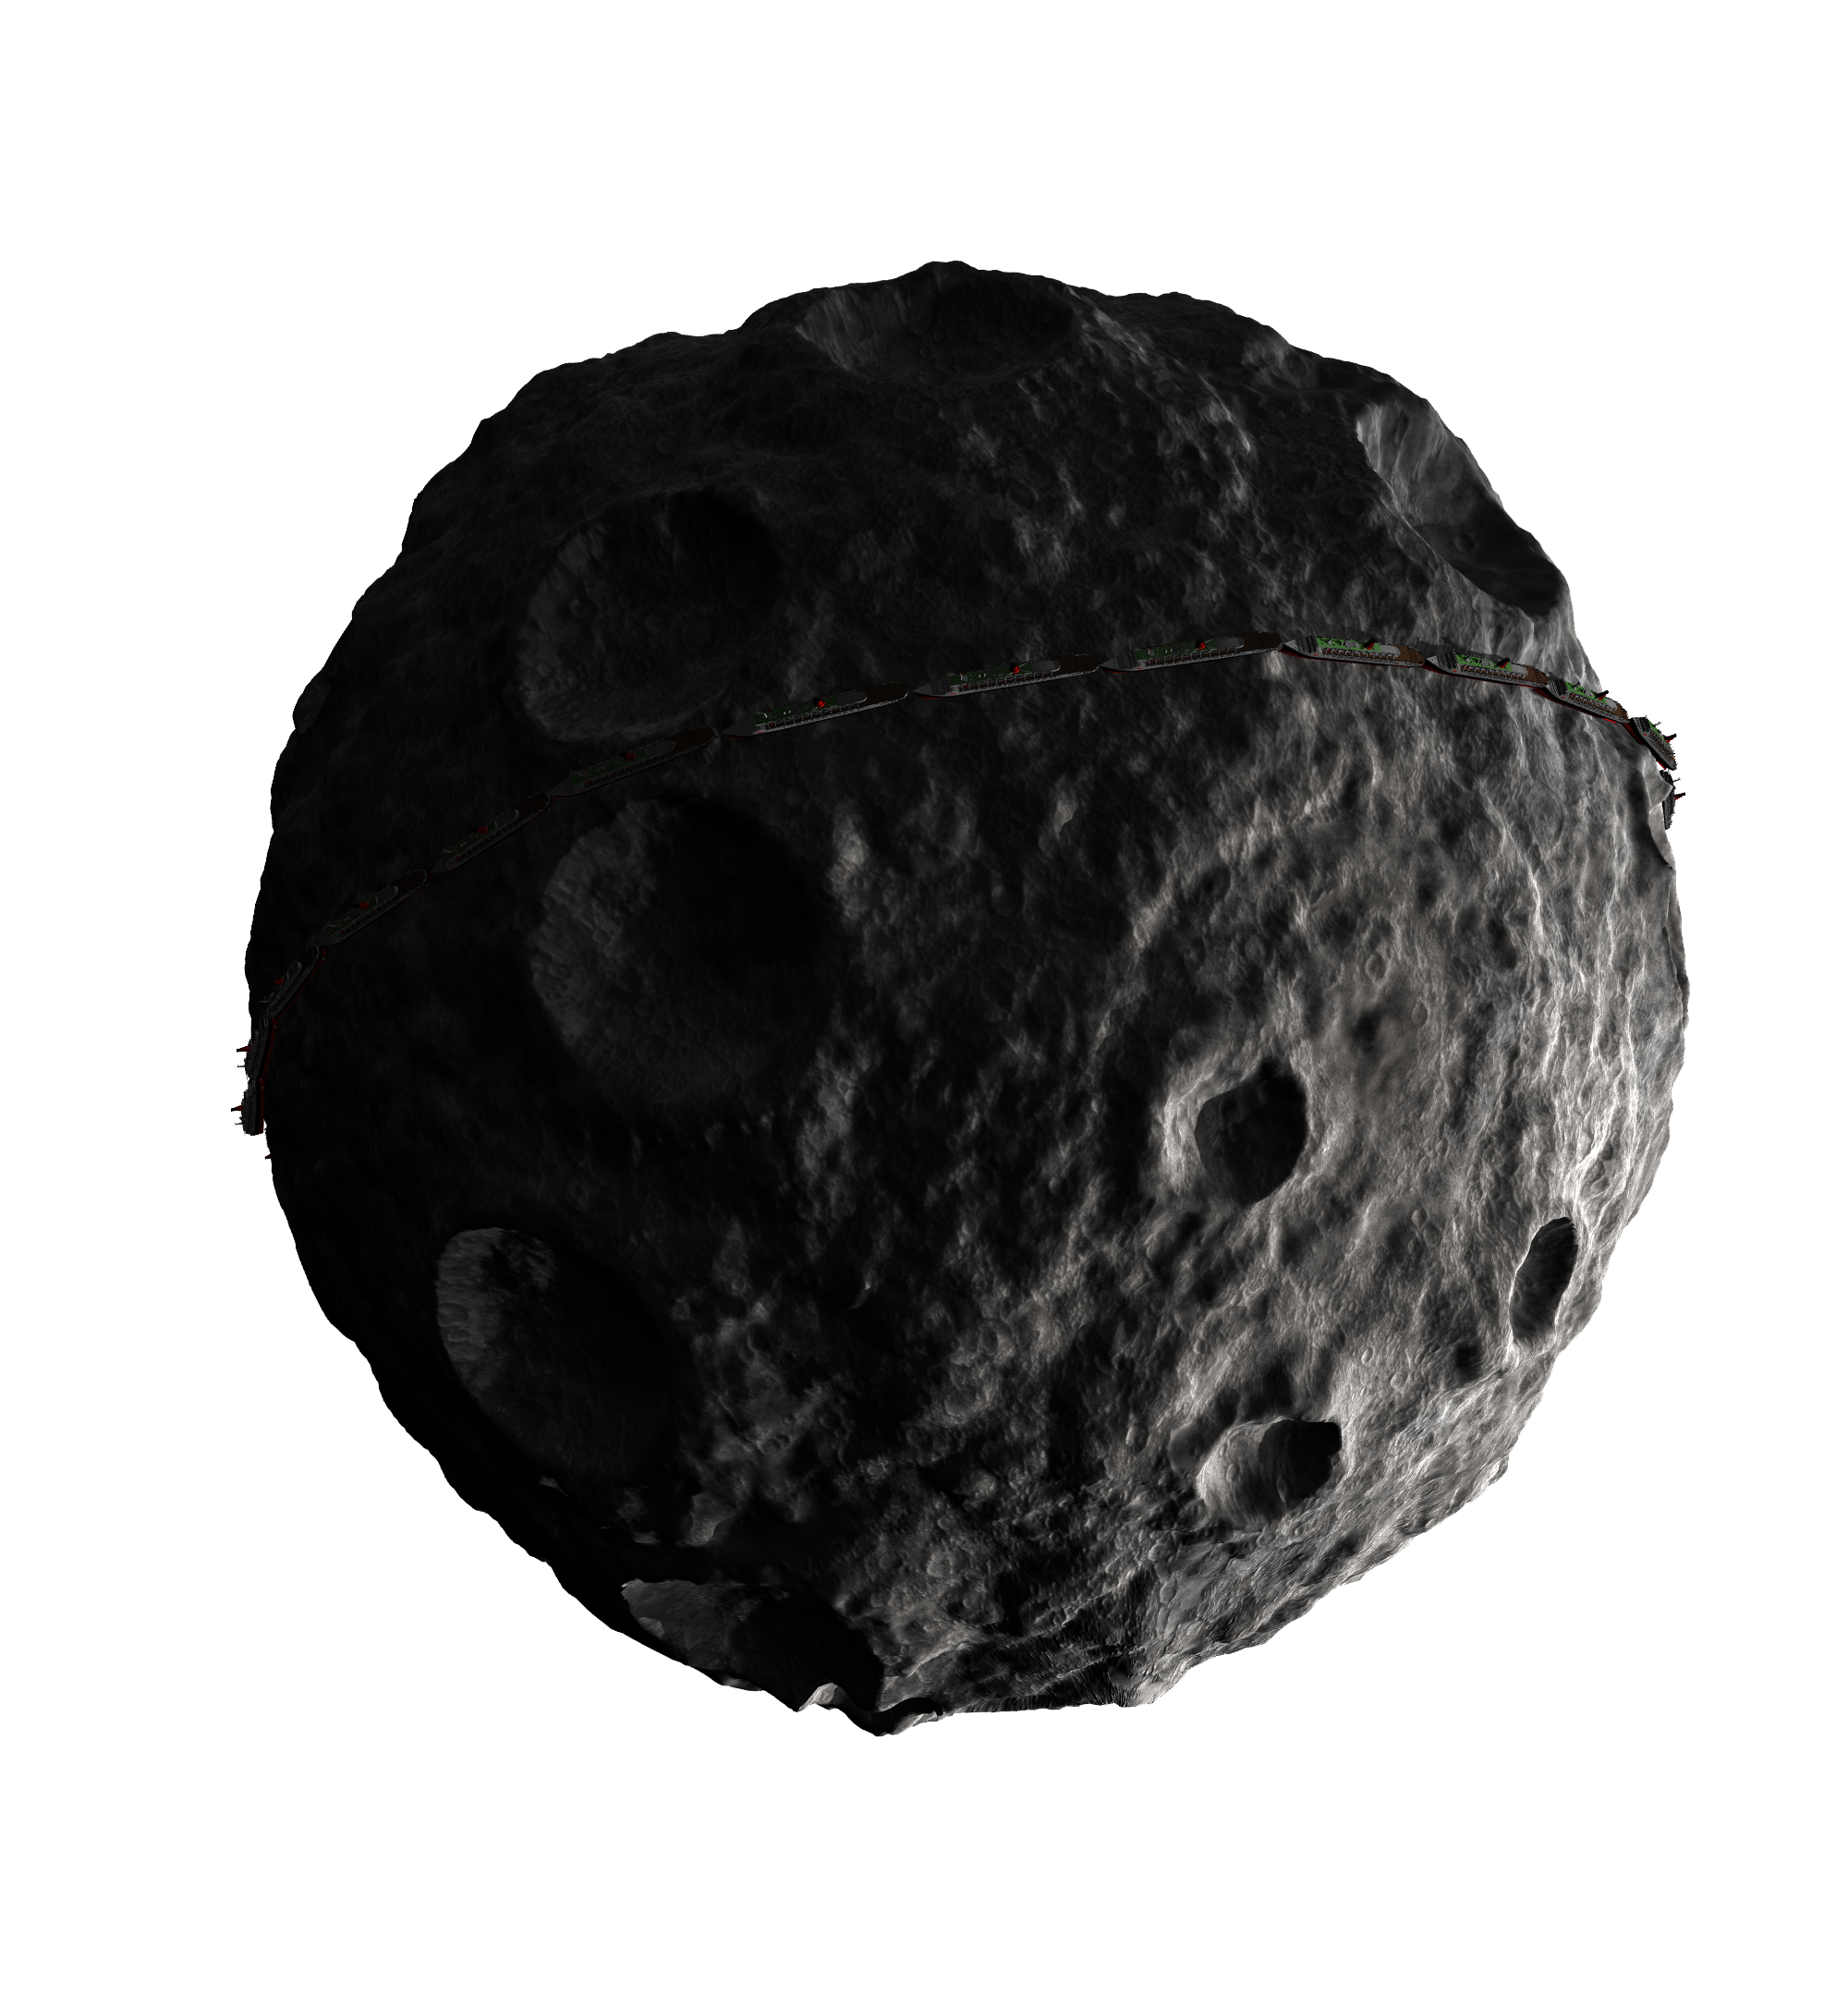 Imagem de PNG do asteróide de meteoro